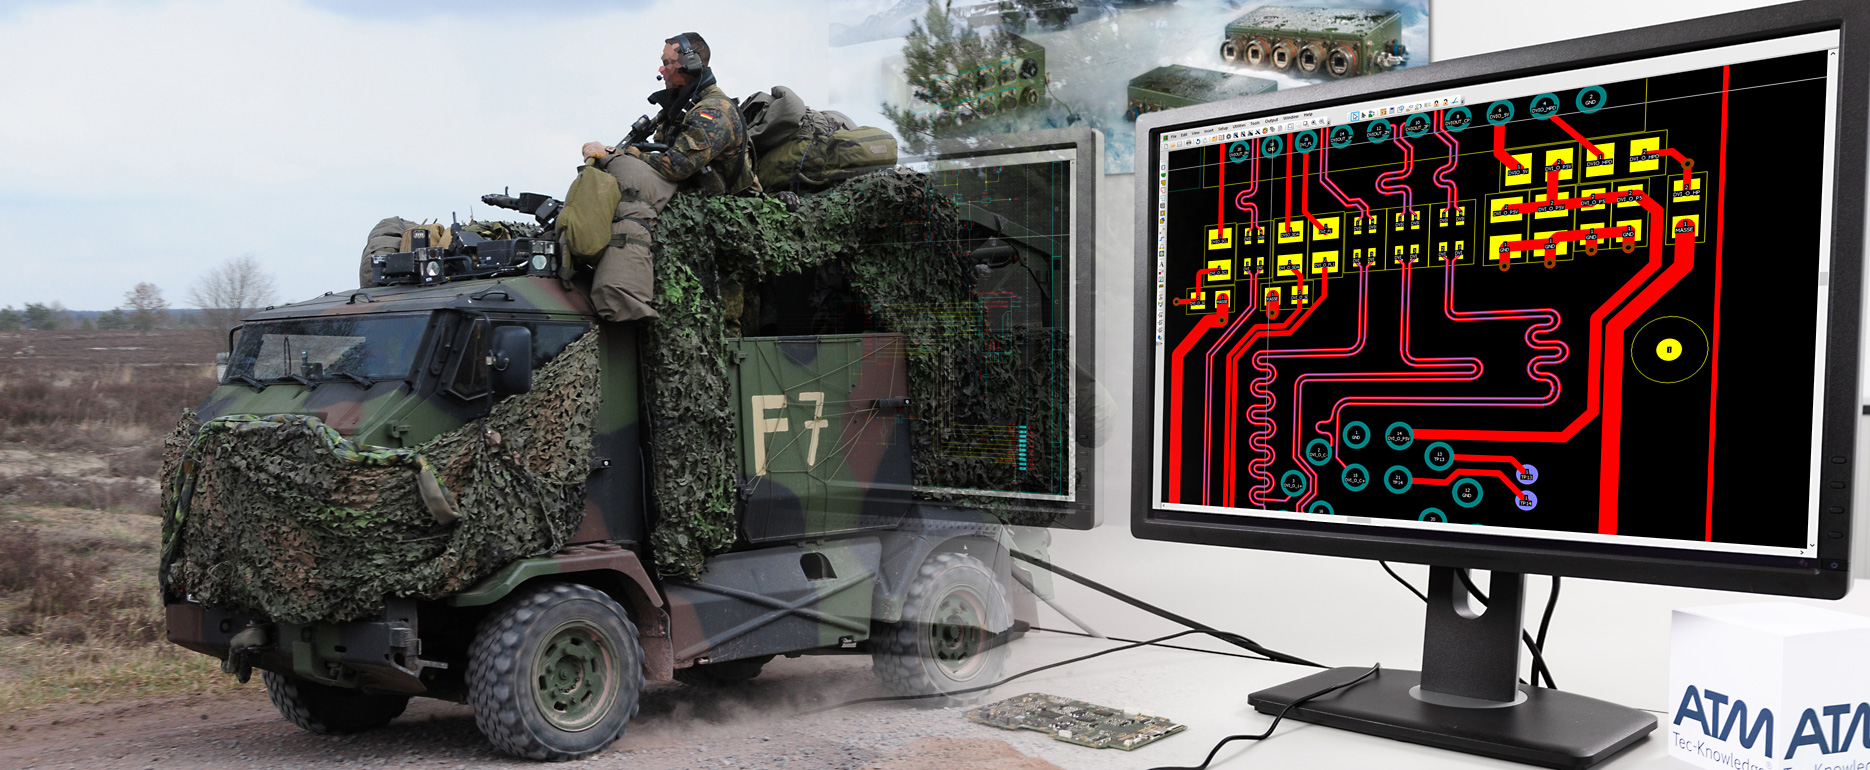 MUNGO transportiert Soldaten und Computermonitor mit Schaltungslayout